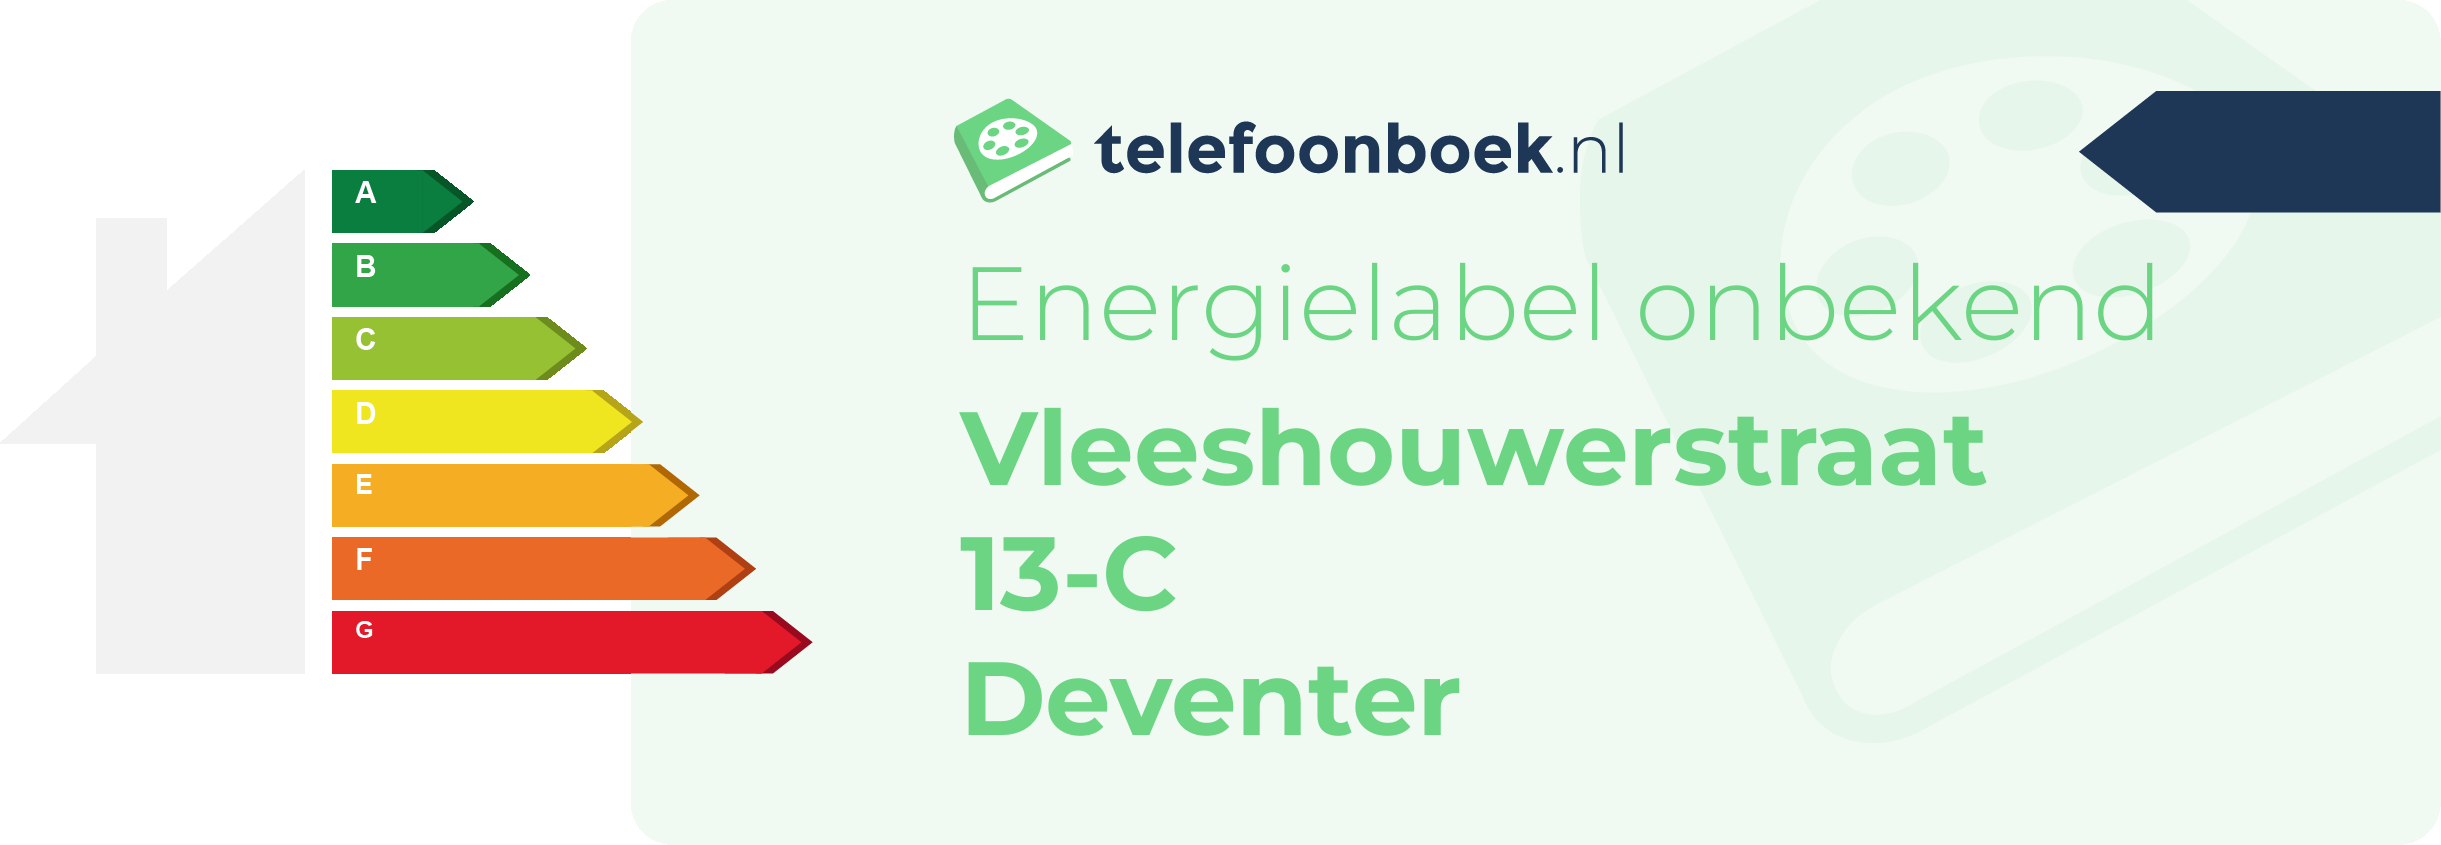 Energielabel Vleeshouwerstraat 13-C Deventer